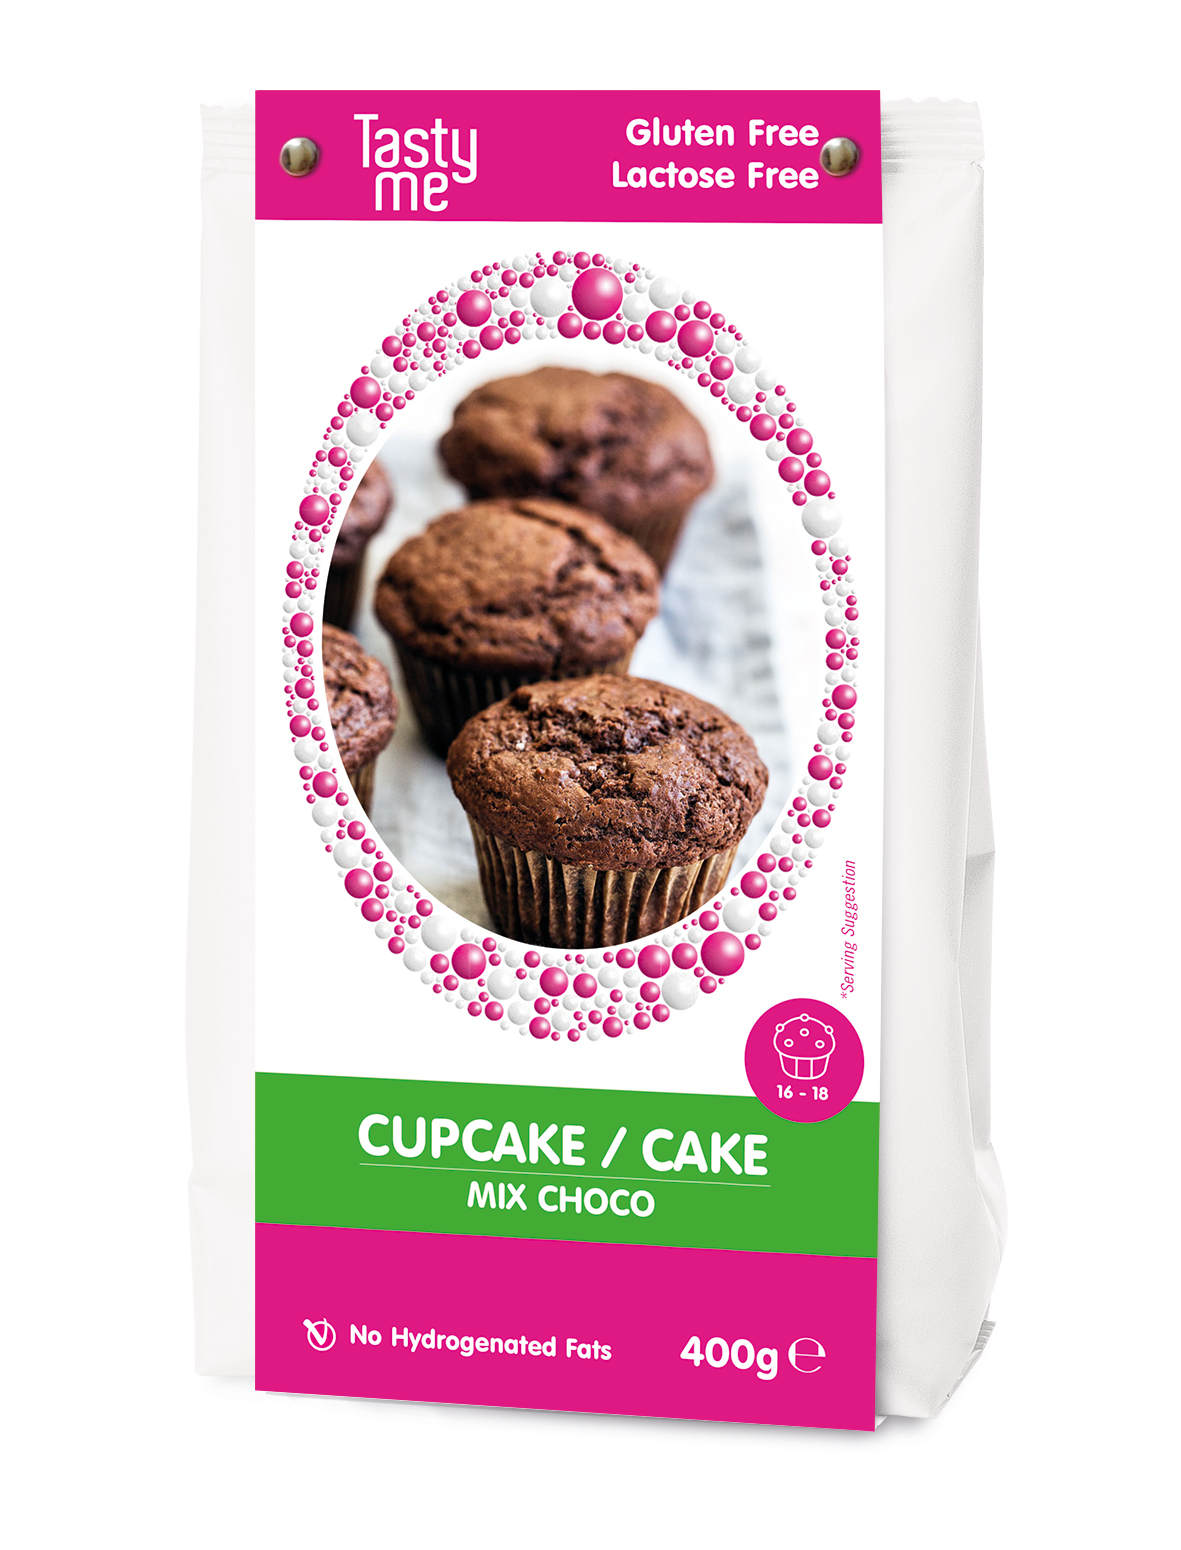 Choco cupcake/cake mix 400g - gluten-free